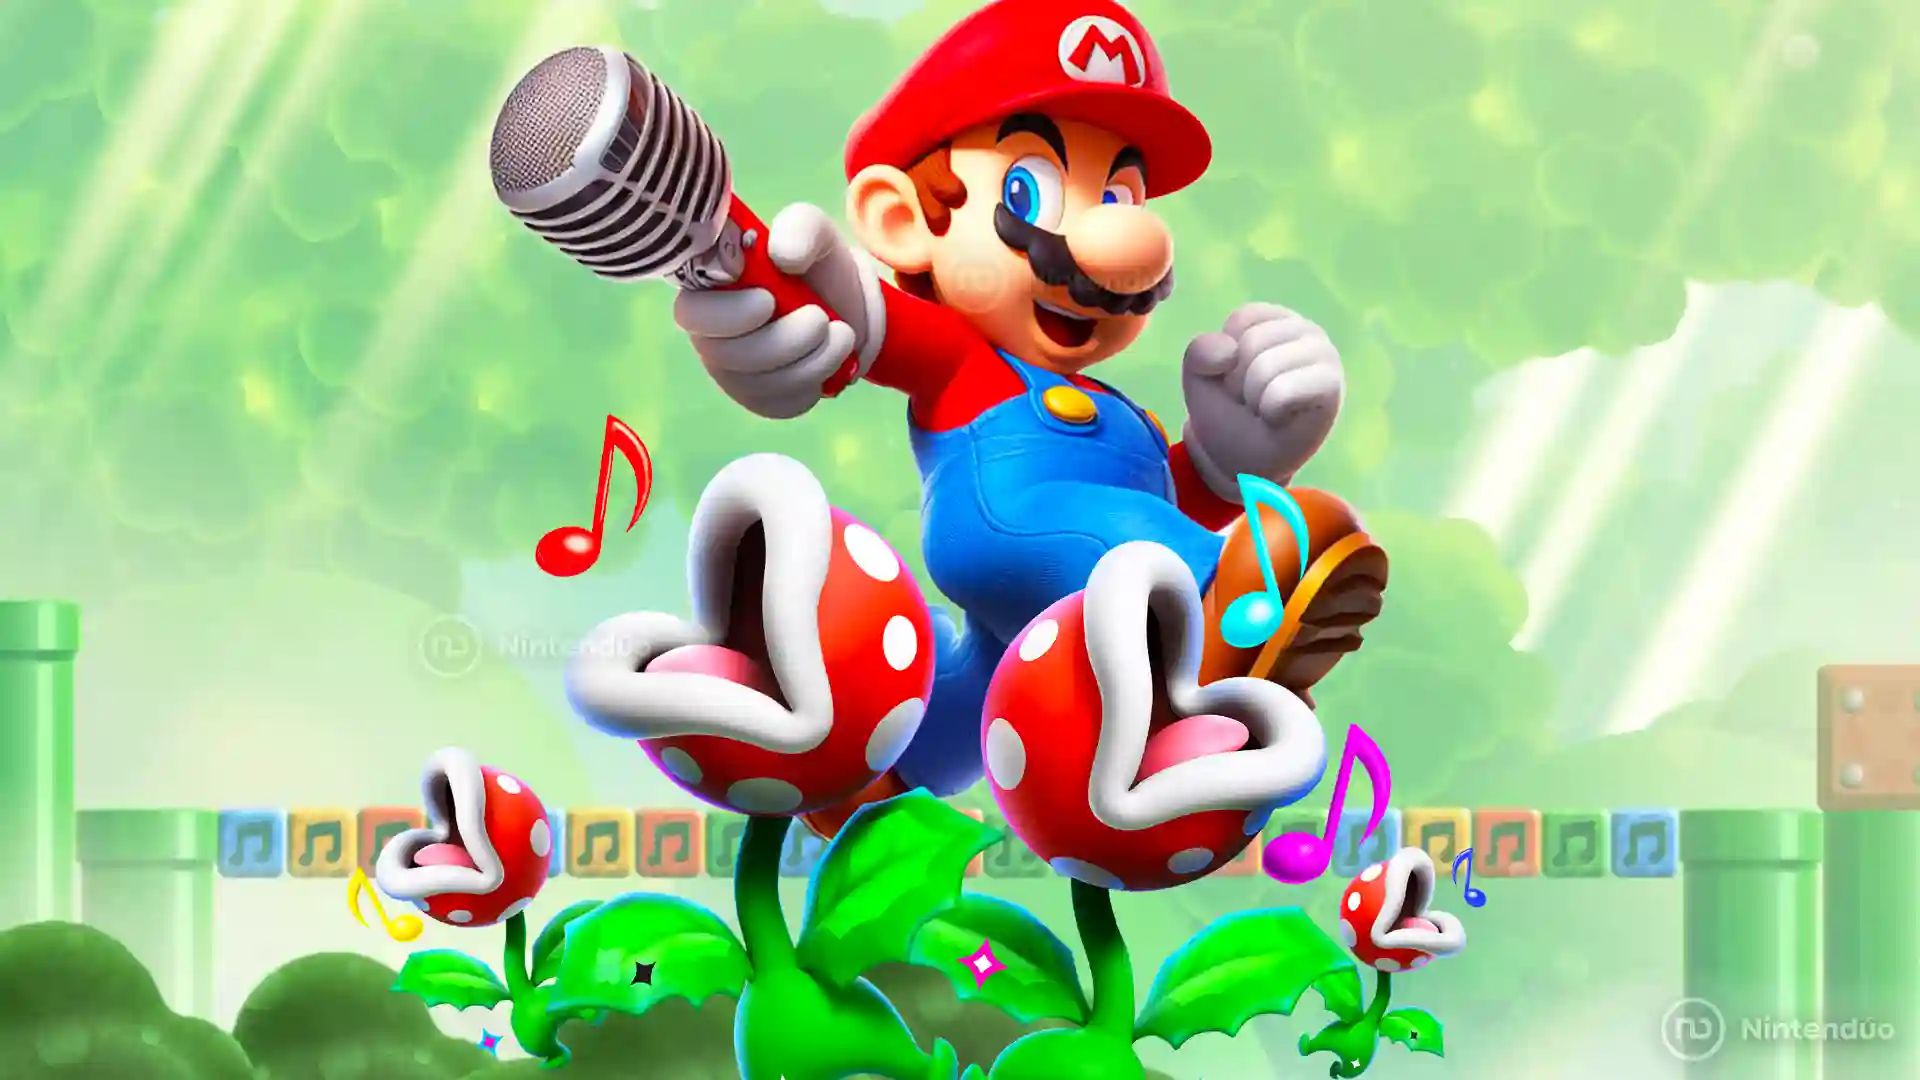 Escucha y mira los niveles musicales de Super Mario Bros Wonder, ¡son alucinantes!